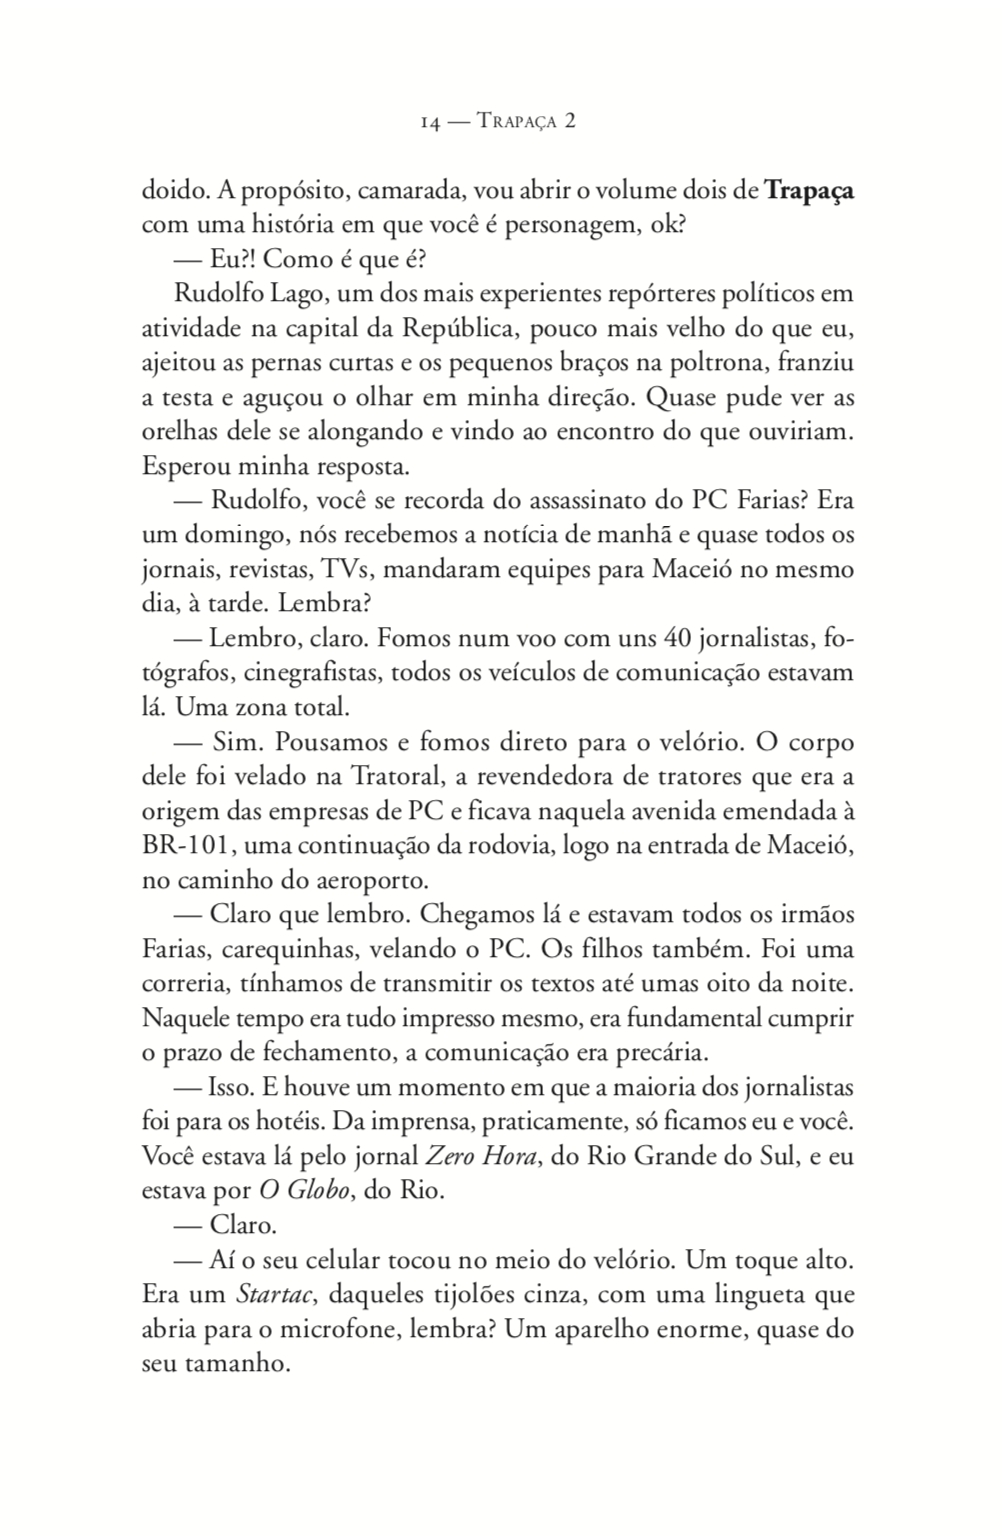 Trapaça Vol 2 - Itamar e FHC - Em português do Brasil Buobooks .com